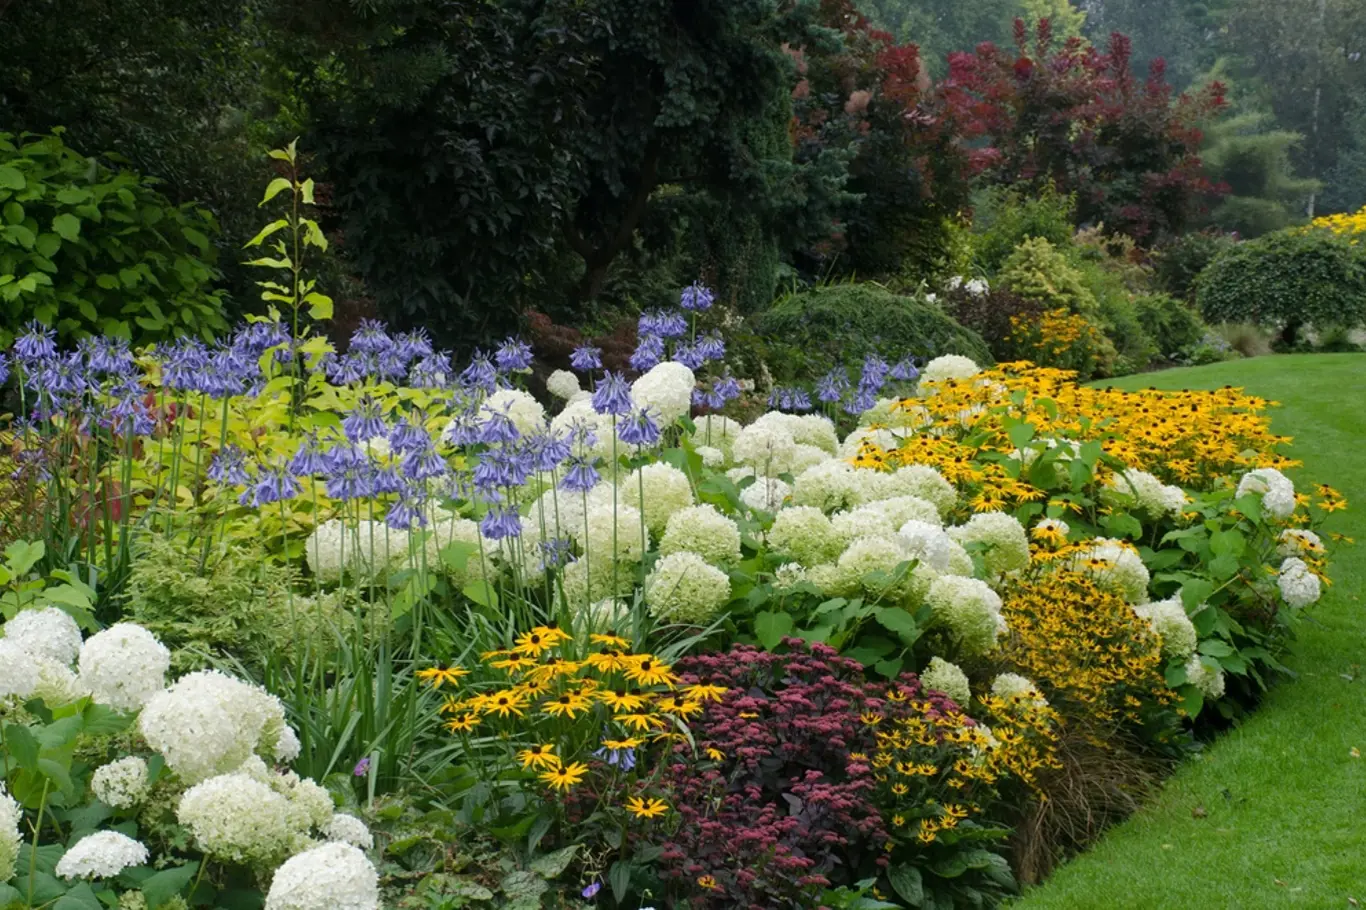 Barvy vyvolávají pocity a nálady a zásadně ovlivňují první dojem z interiéru i zahrady